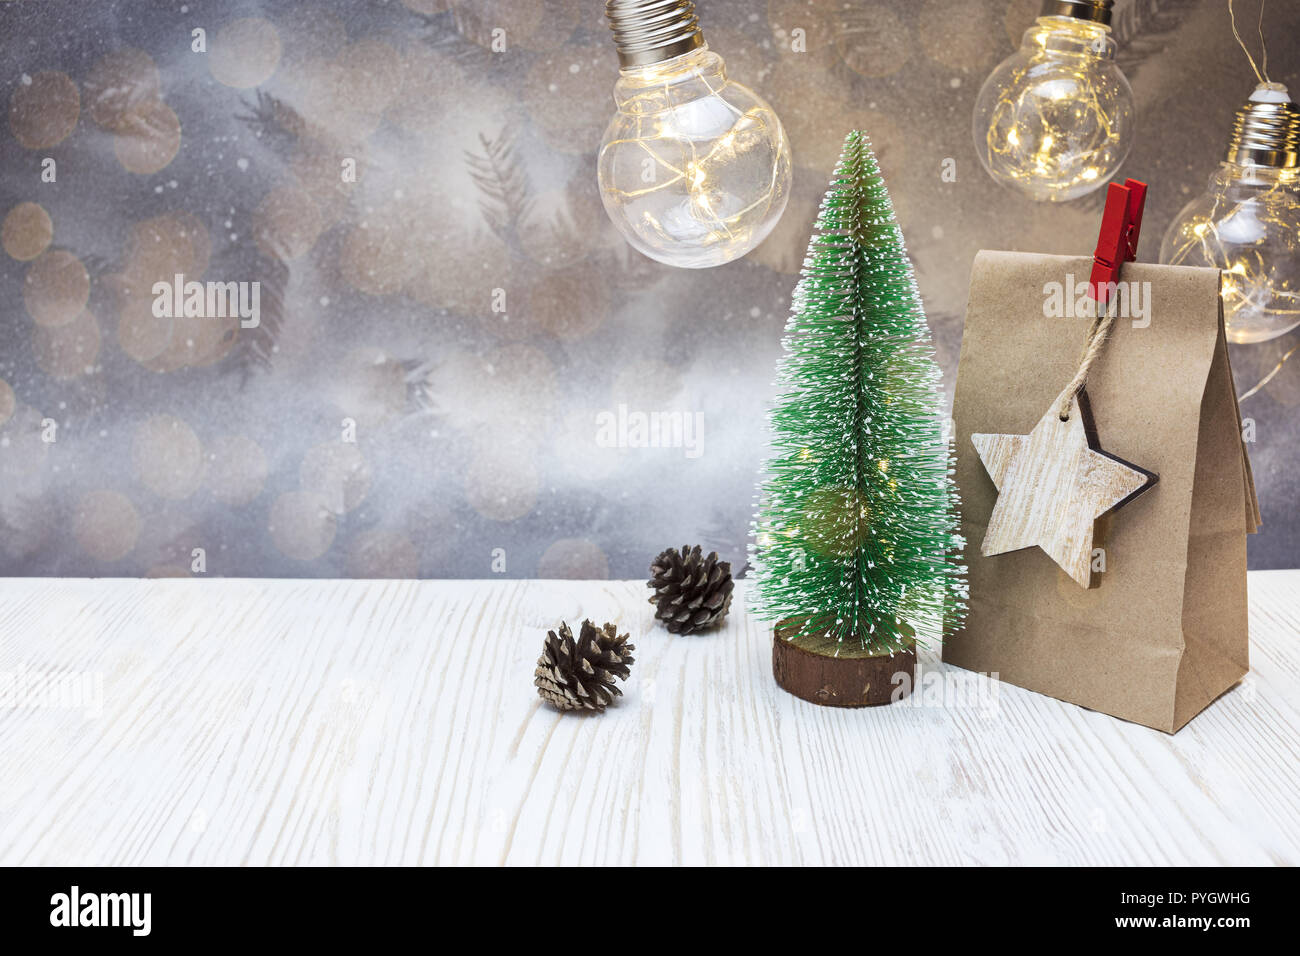 Decorazione di natale con piccoli falso albero verde, carta regalo e sacchetto vecchio ghirlande di lampada Foto Stock